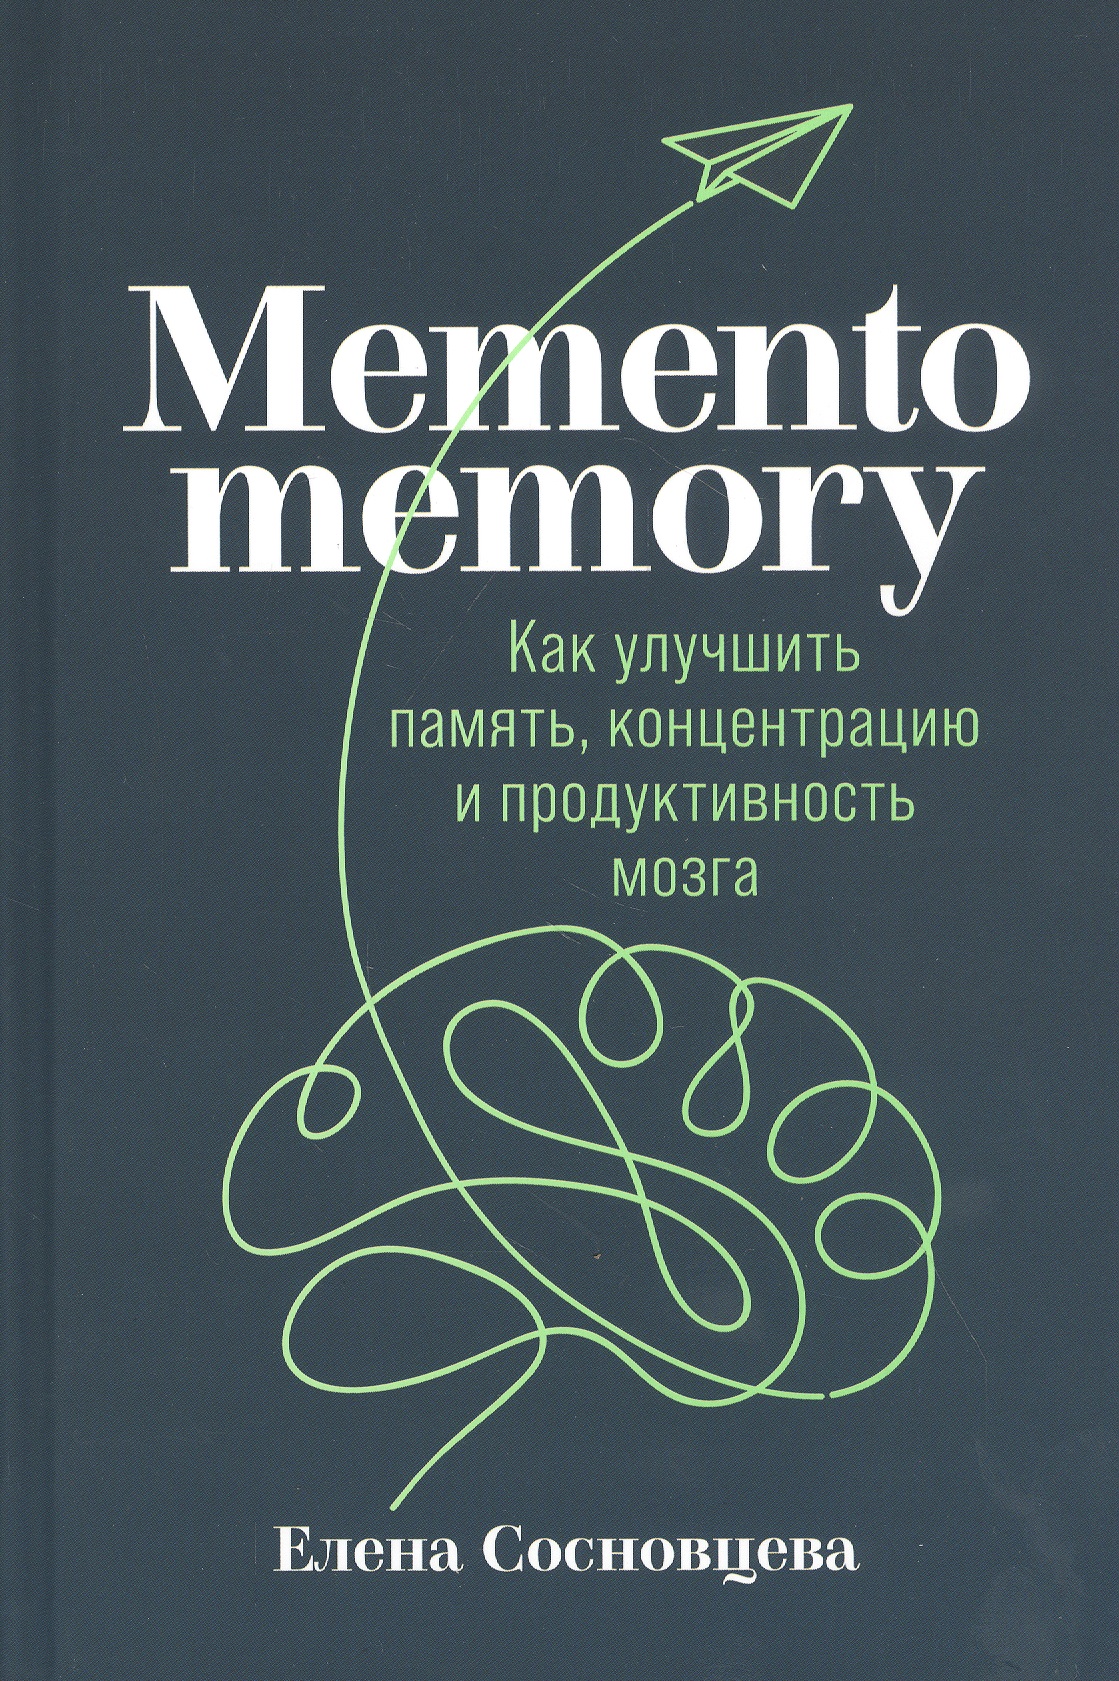 None Memento memory:  Как улучшить память, концентрацию и продуктивность мозга